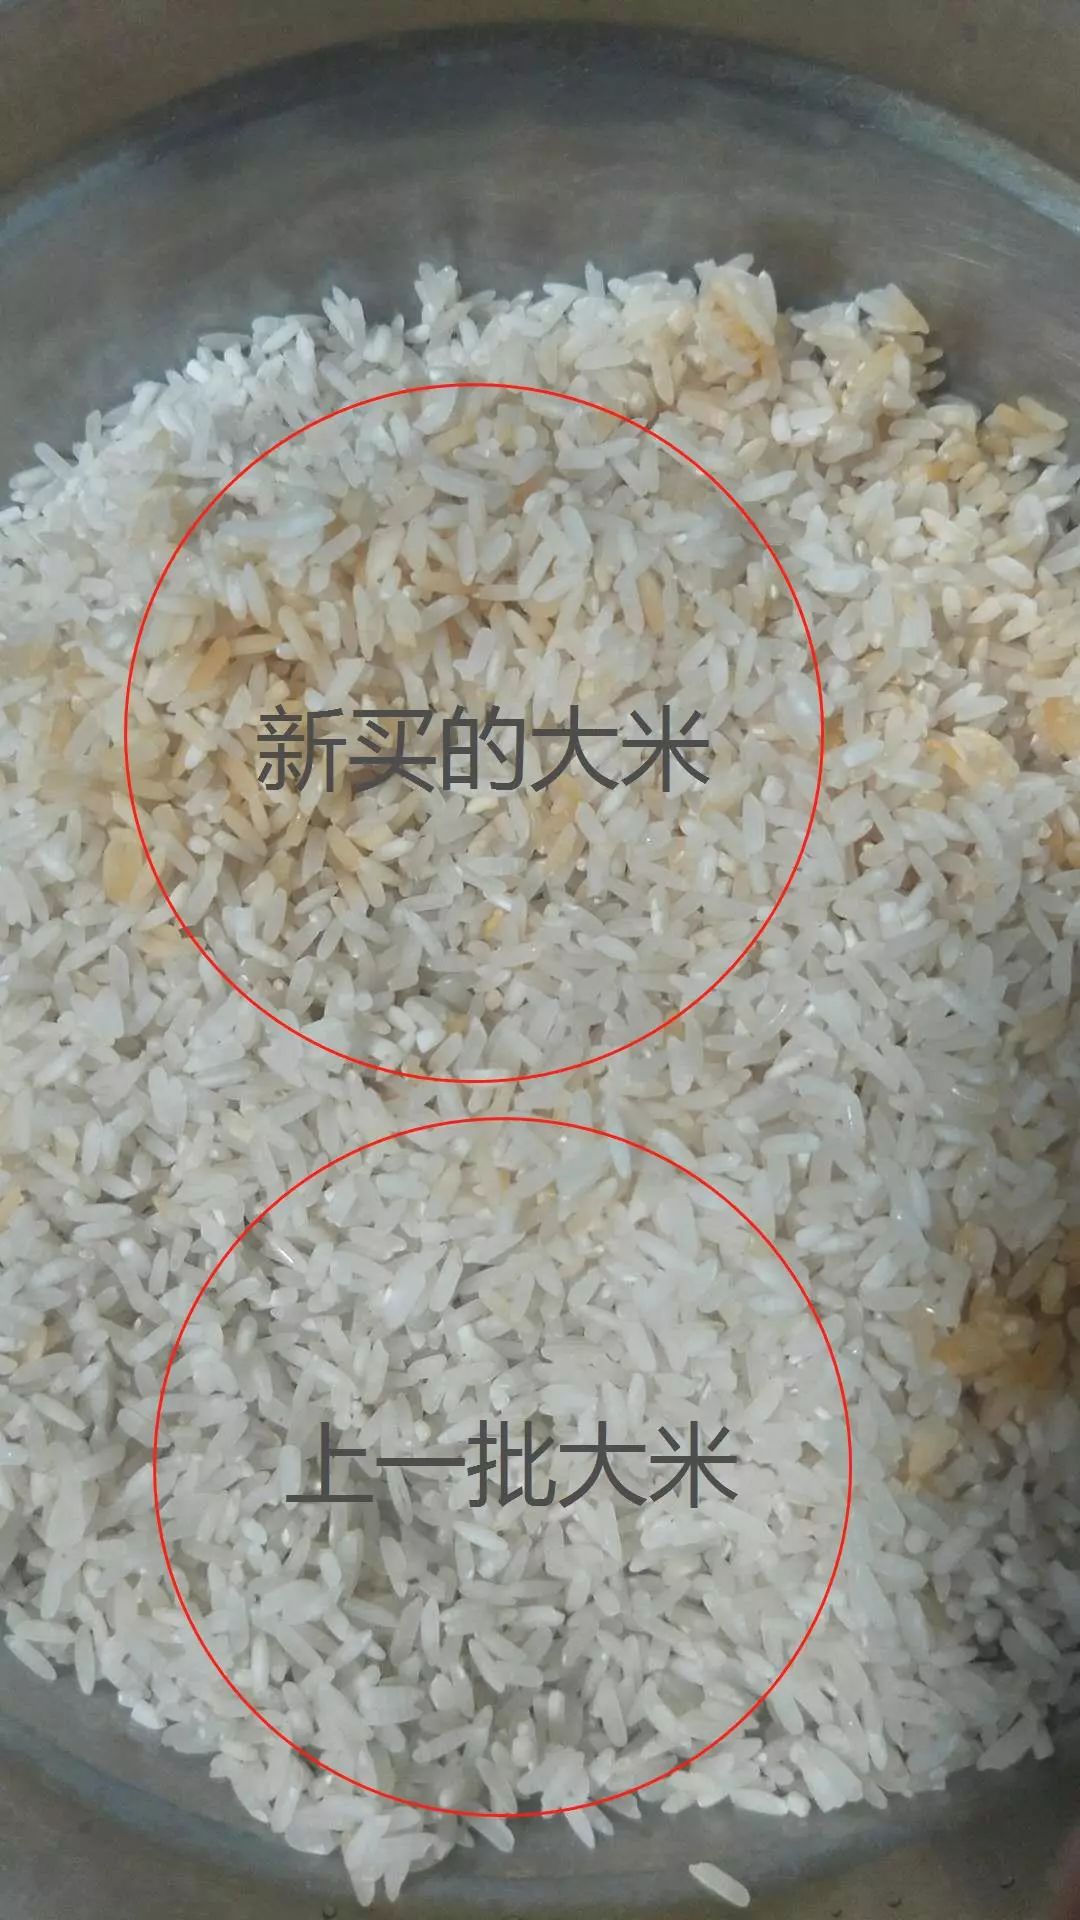 同一价格,不同批次的大米,l小姐上一次买的大米反而颜色更白